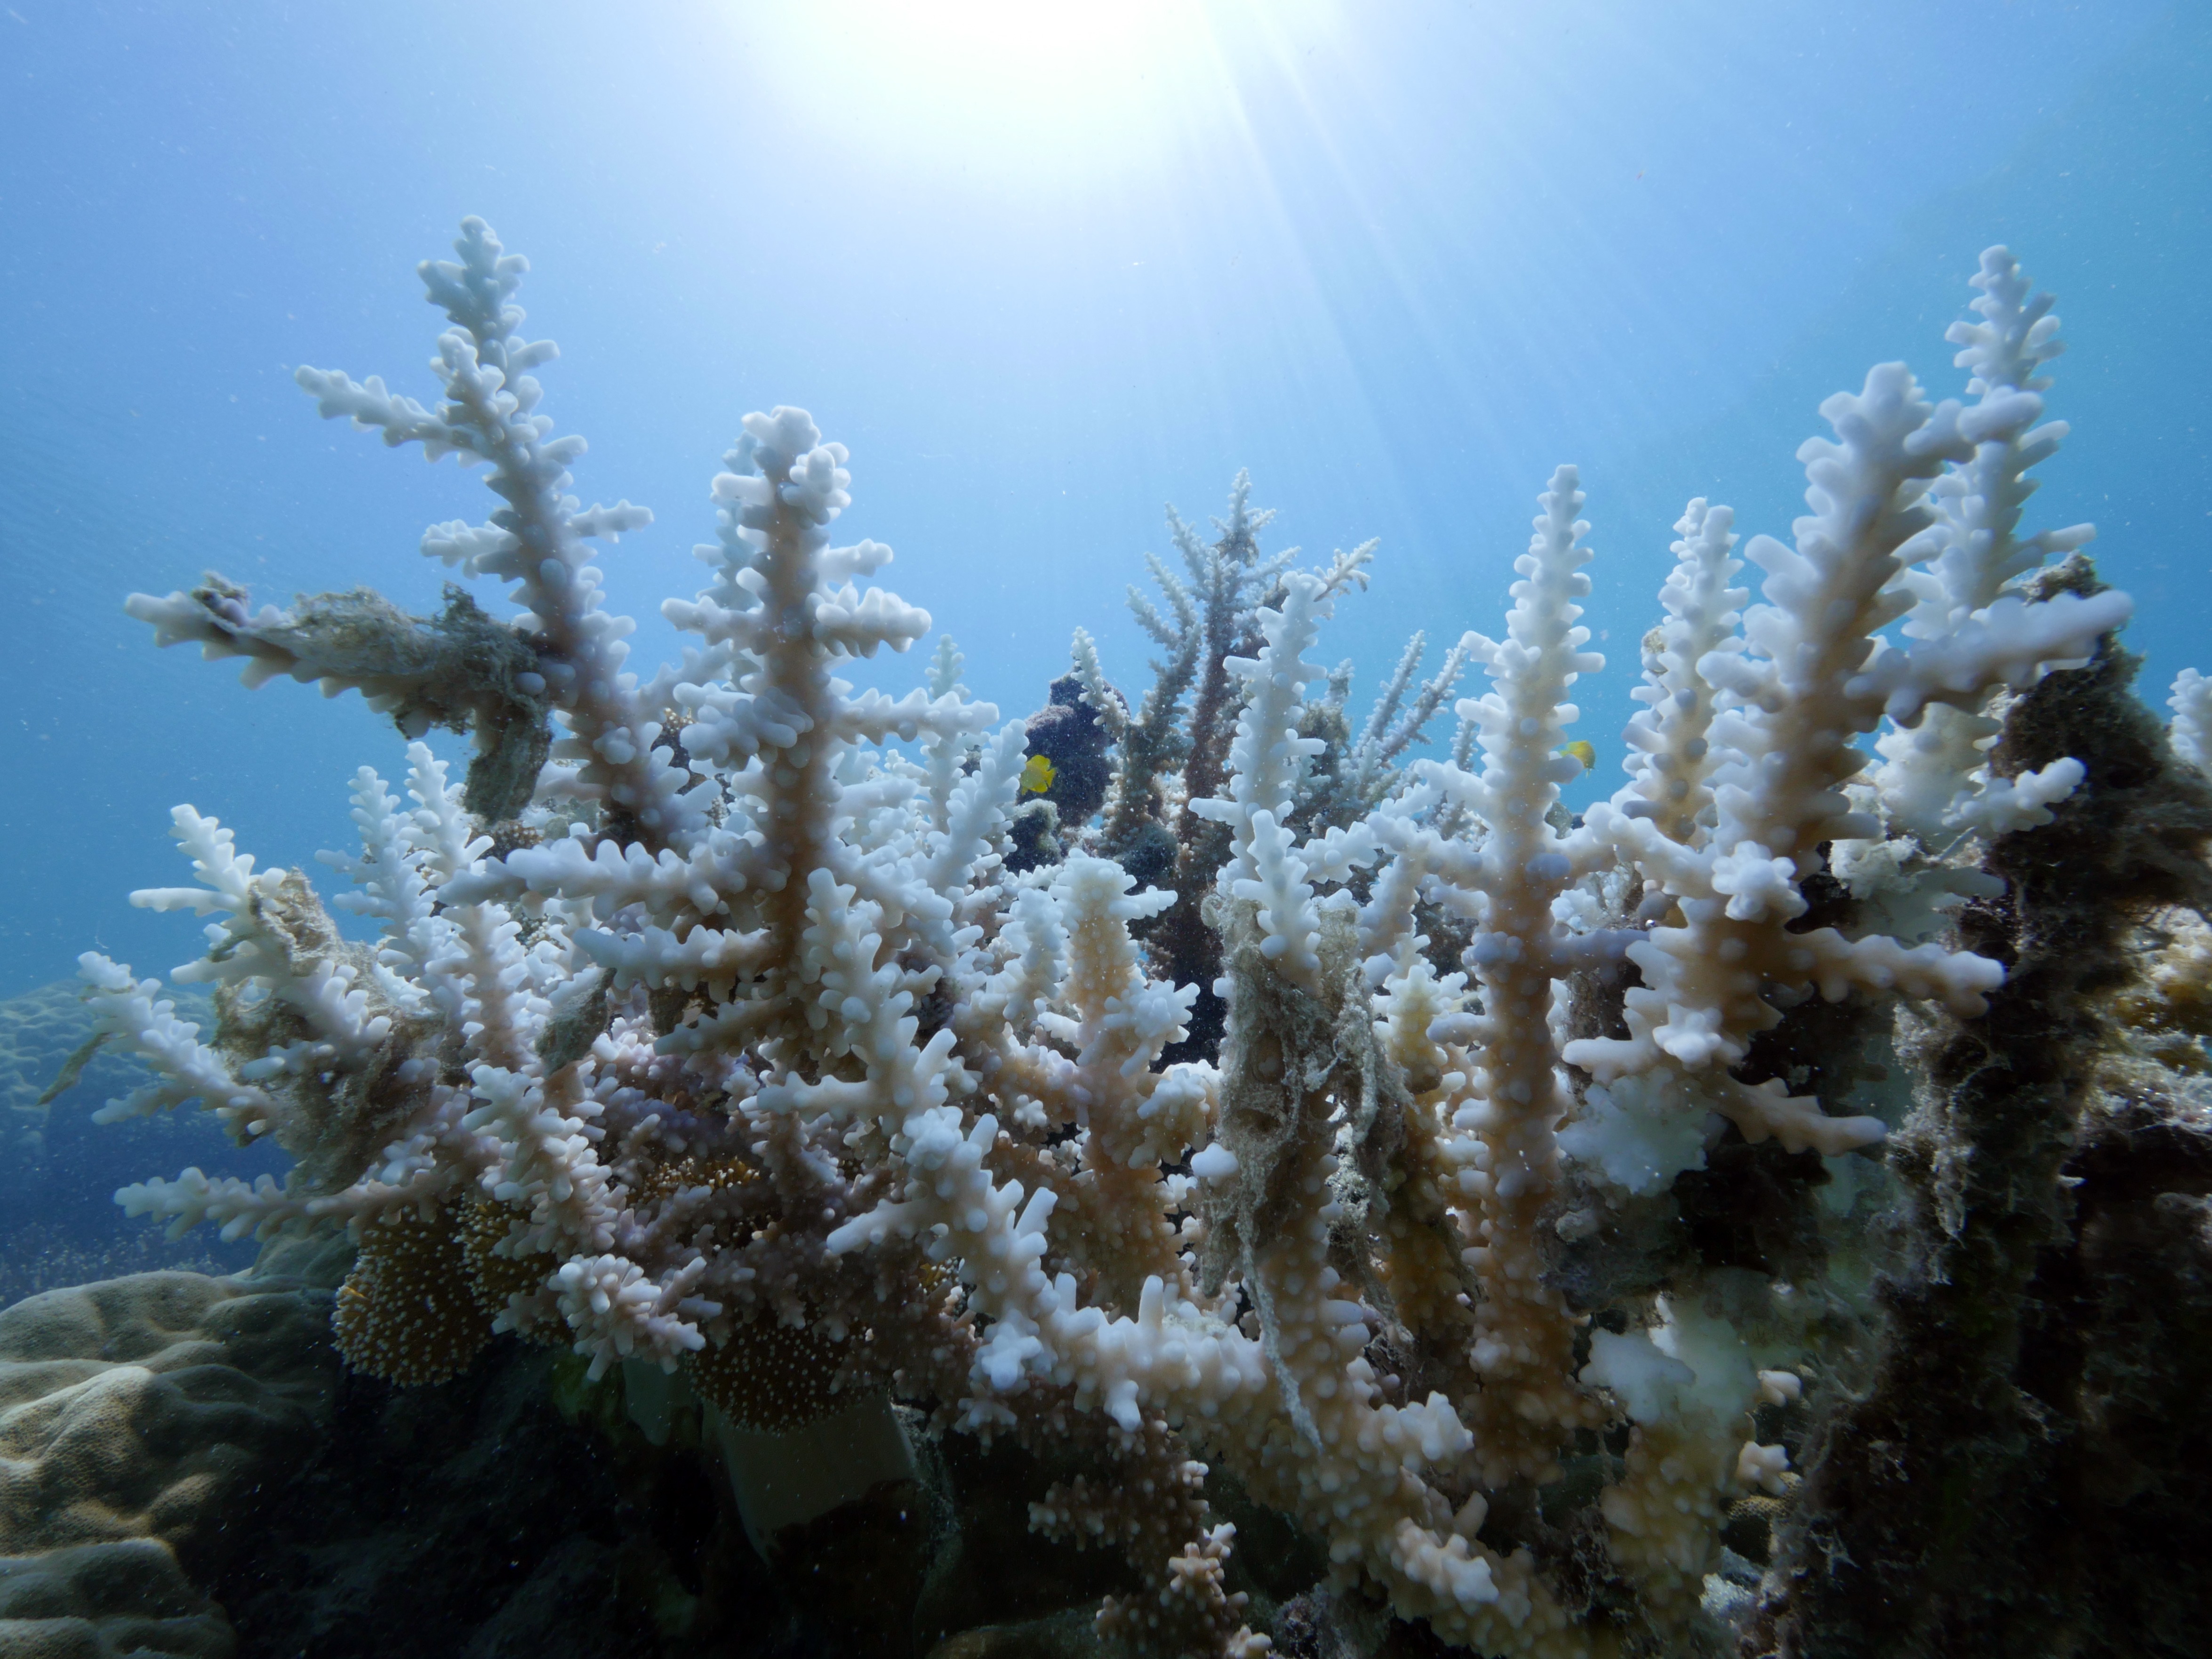 Cette photo a été prise en Australie. La Grande Barrière de corail présente depuis quelques semaines, elle aussi,des signes de blanchissement dû au réchauffement de la température de la mer, phénomène qui pourrait s'accélérer rapidement si les conditions météorologiques ne s'améliorent pas, ont prévenu des scientifiques. Photo : AFP